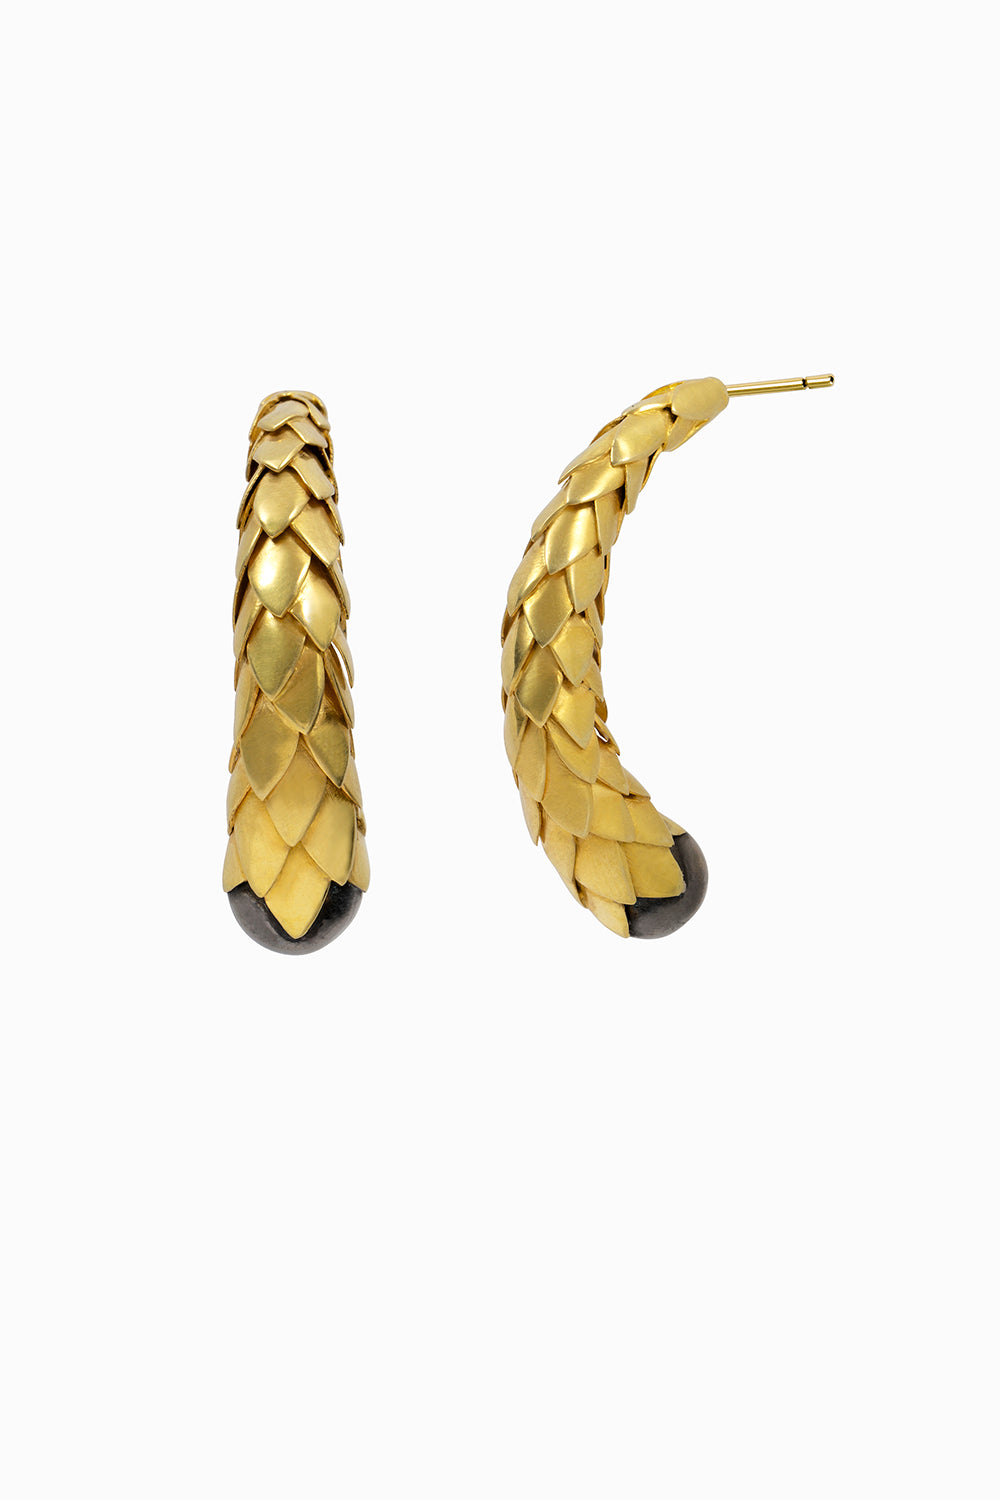 Pine earrings